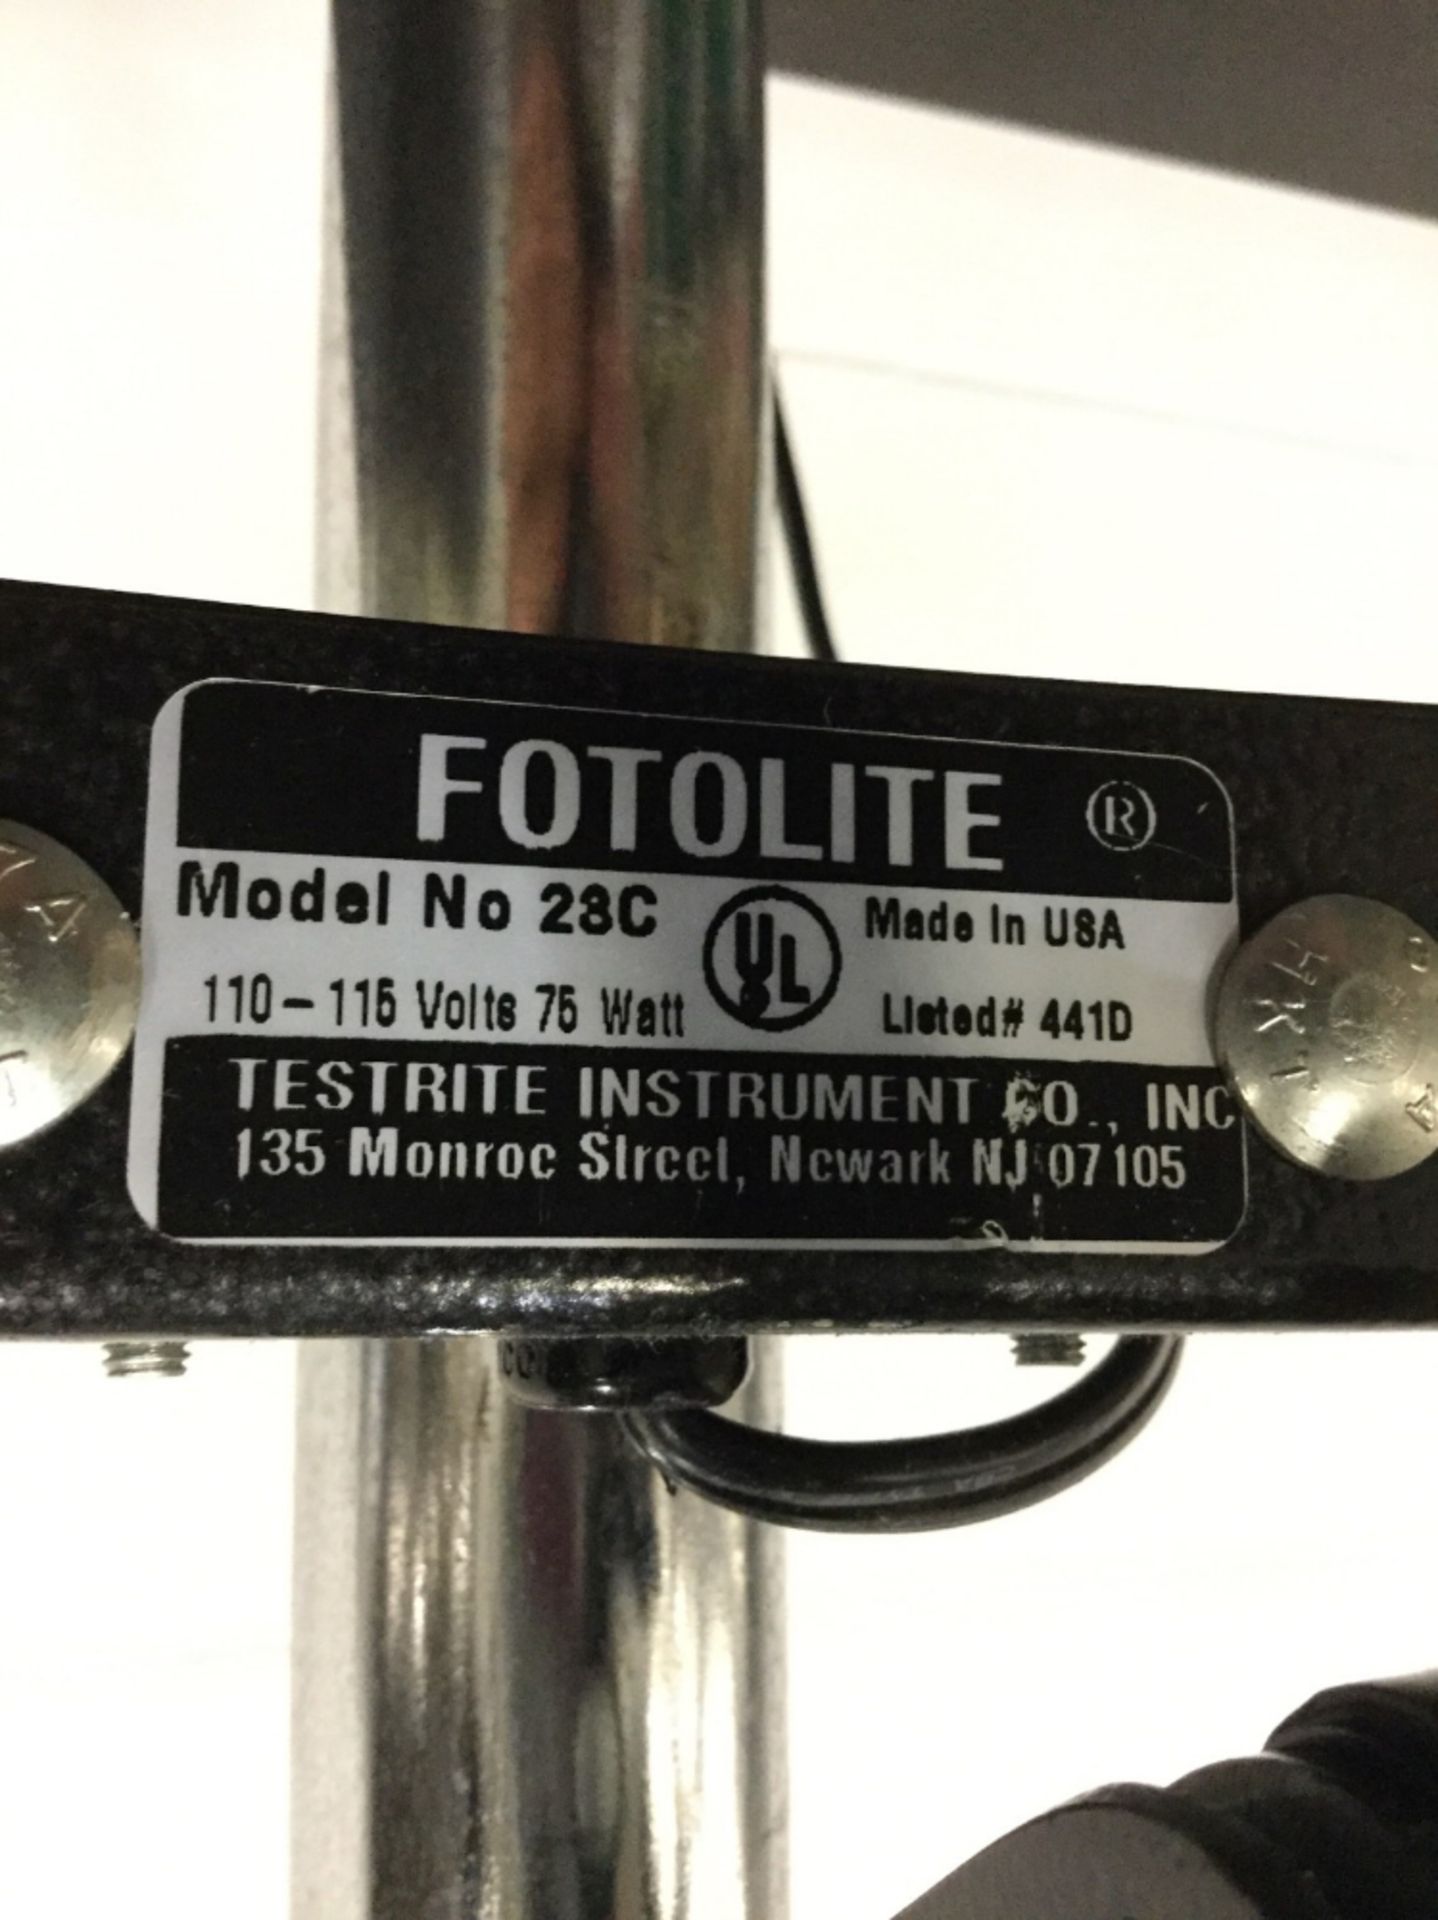 FotoLite Model 23C Dual Heat Lamp - Image 2 of 2